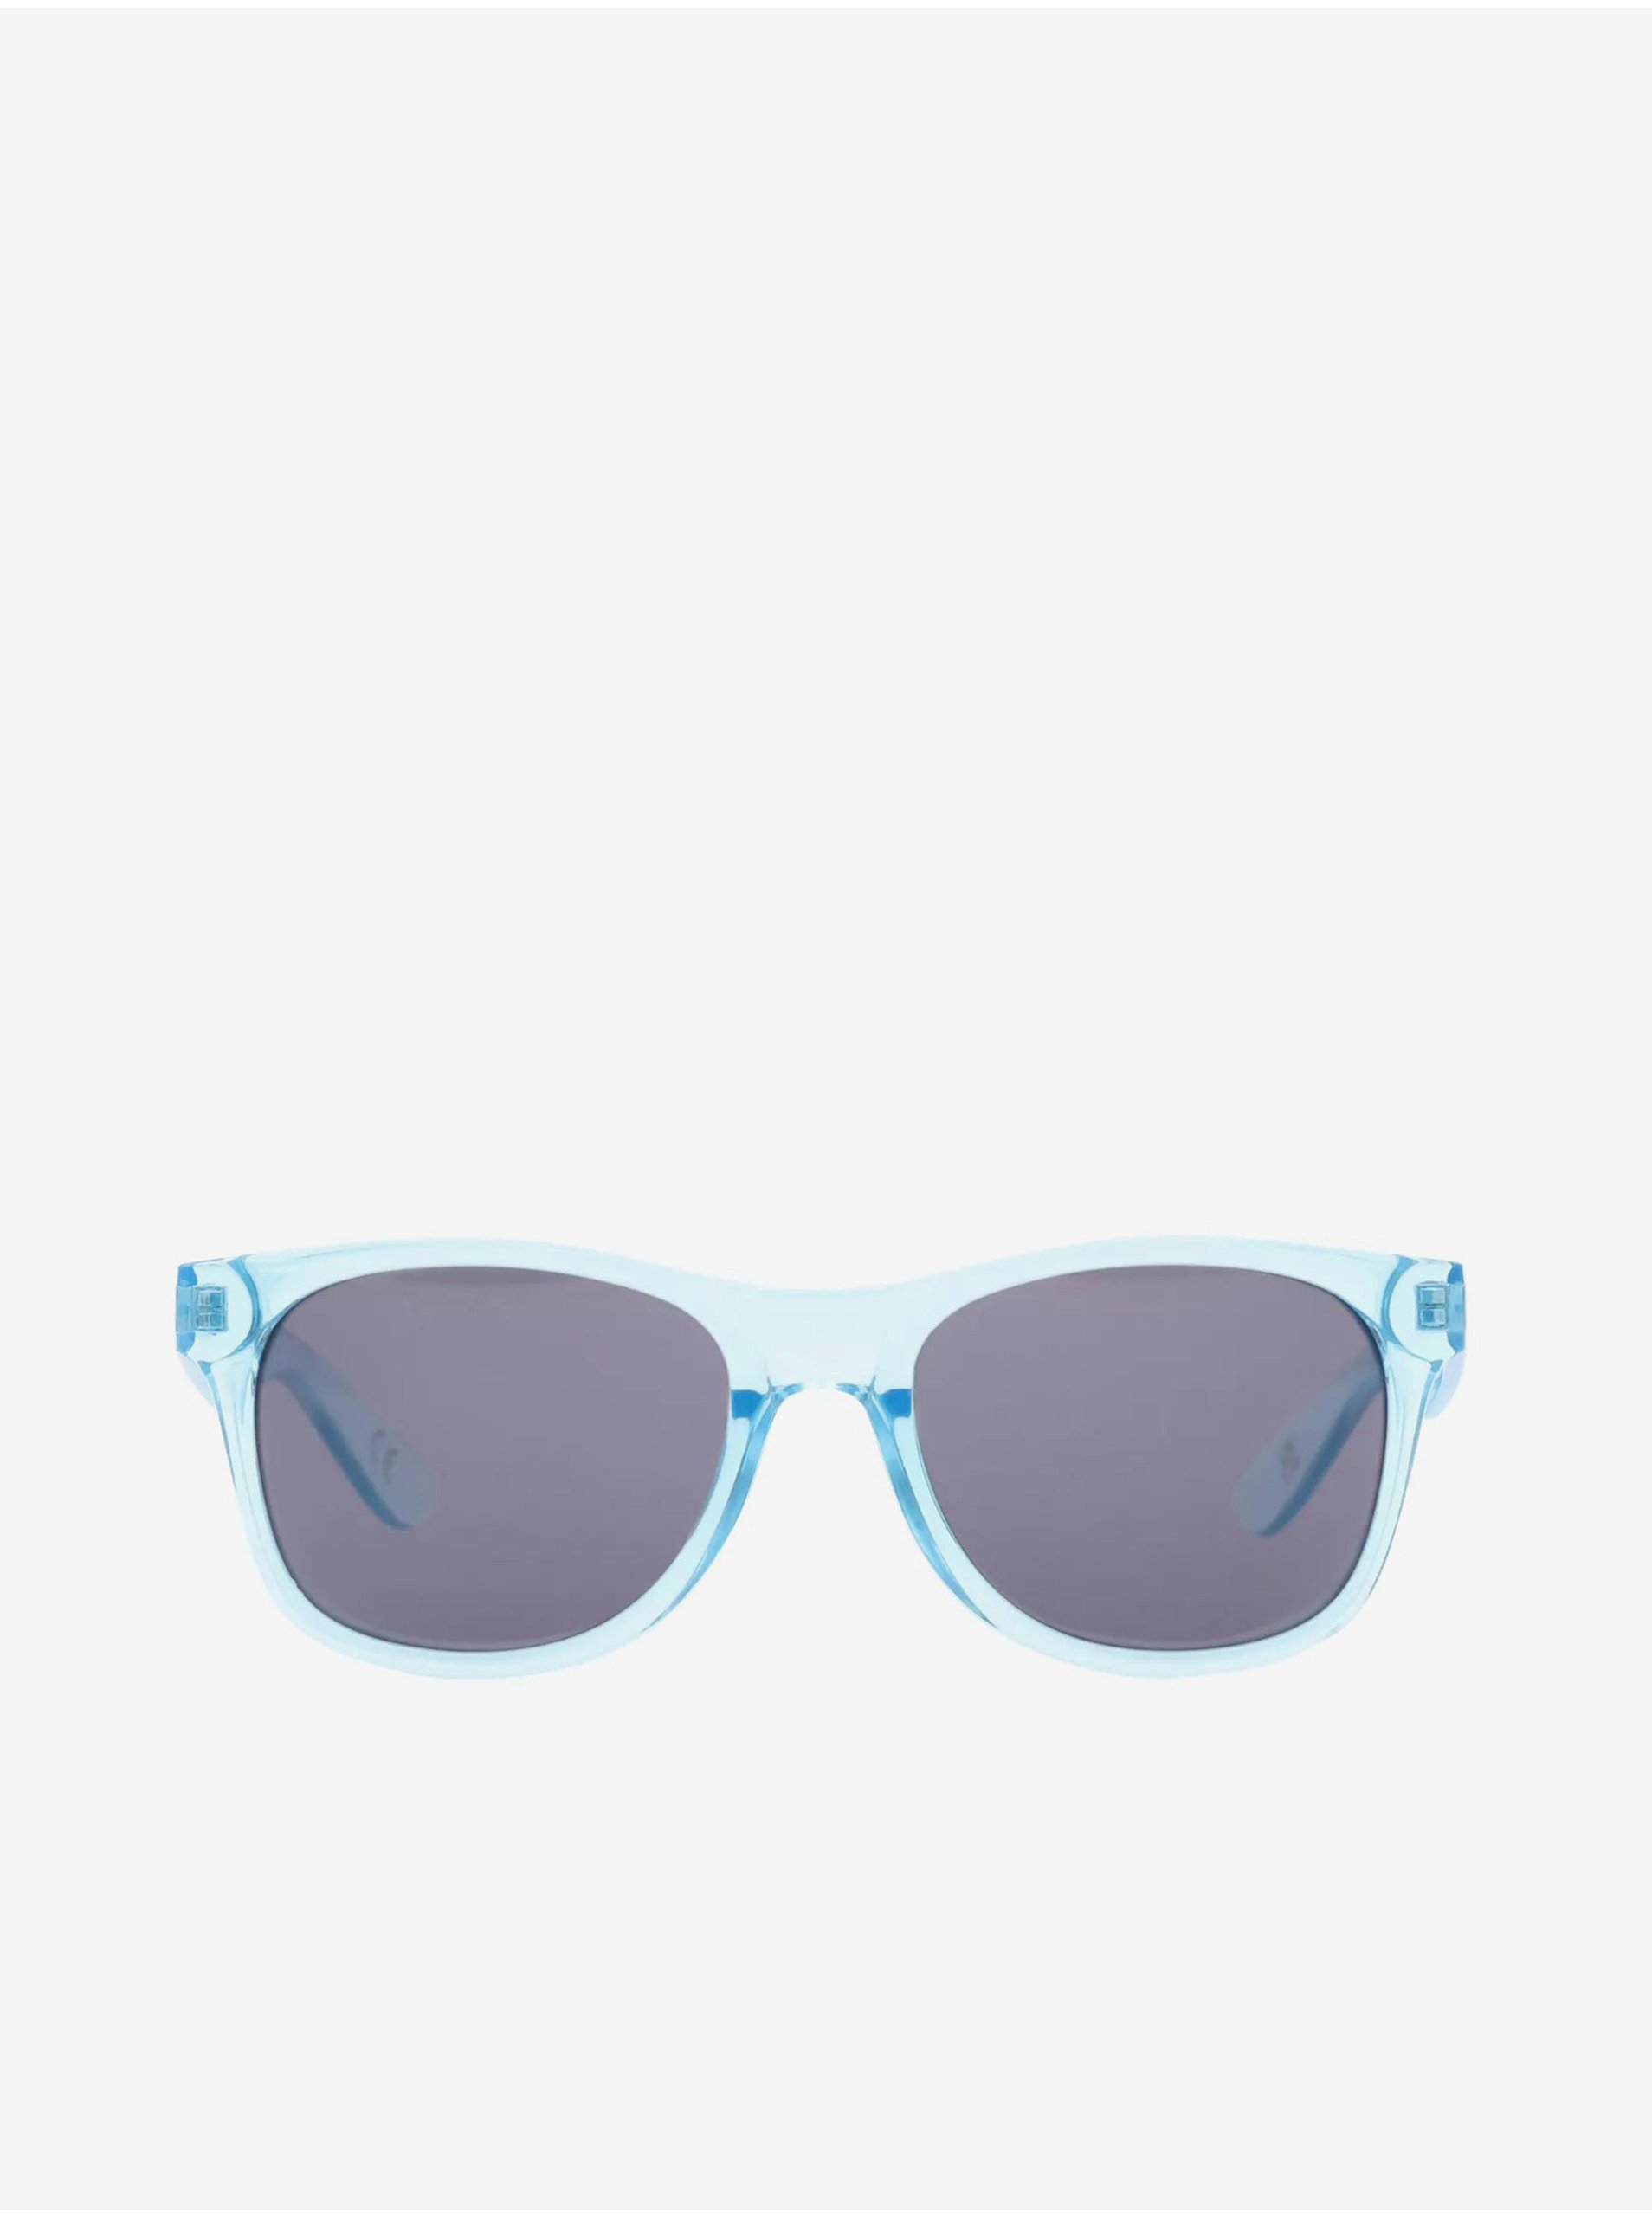 Light blue mens sunglasses VANS MN SPICOLI 4 SHADES - Men